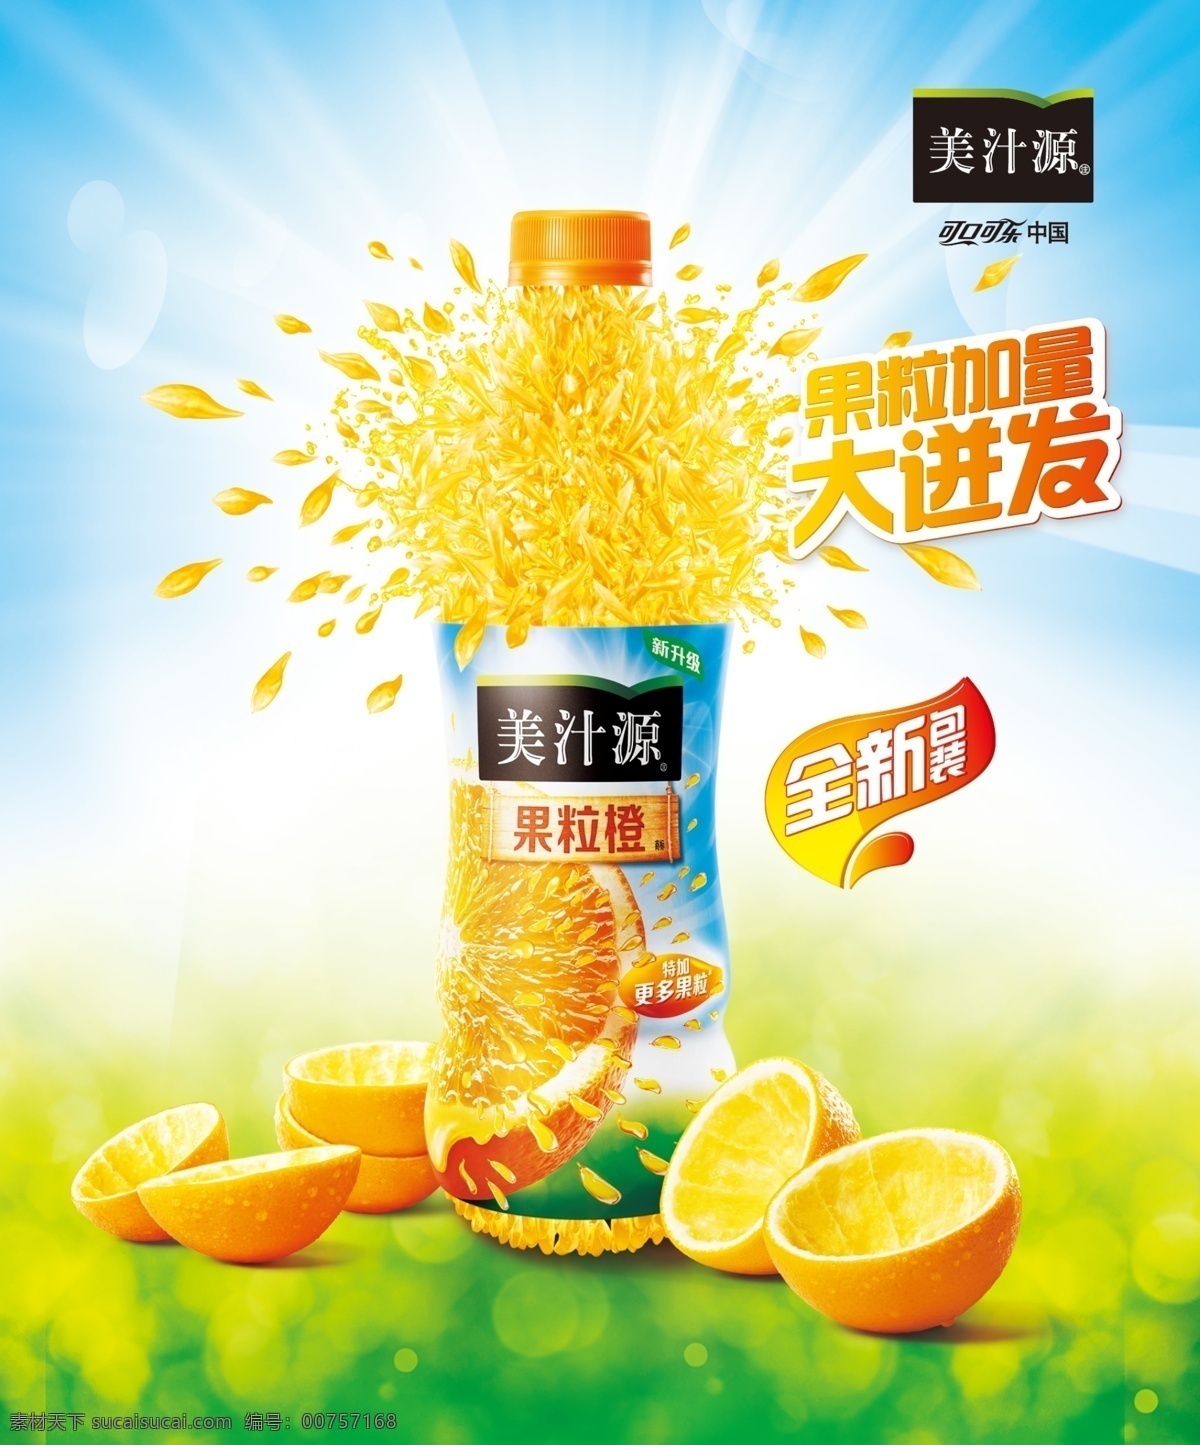 美汁源果粒橙 美汁源 果粒橙 水果 橙子 橘子 啤酒 国内广告设计